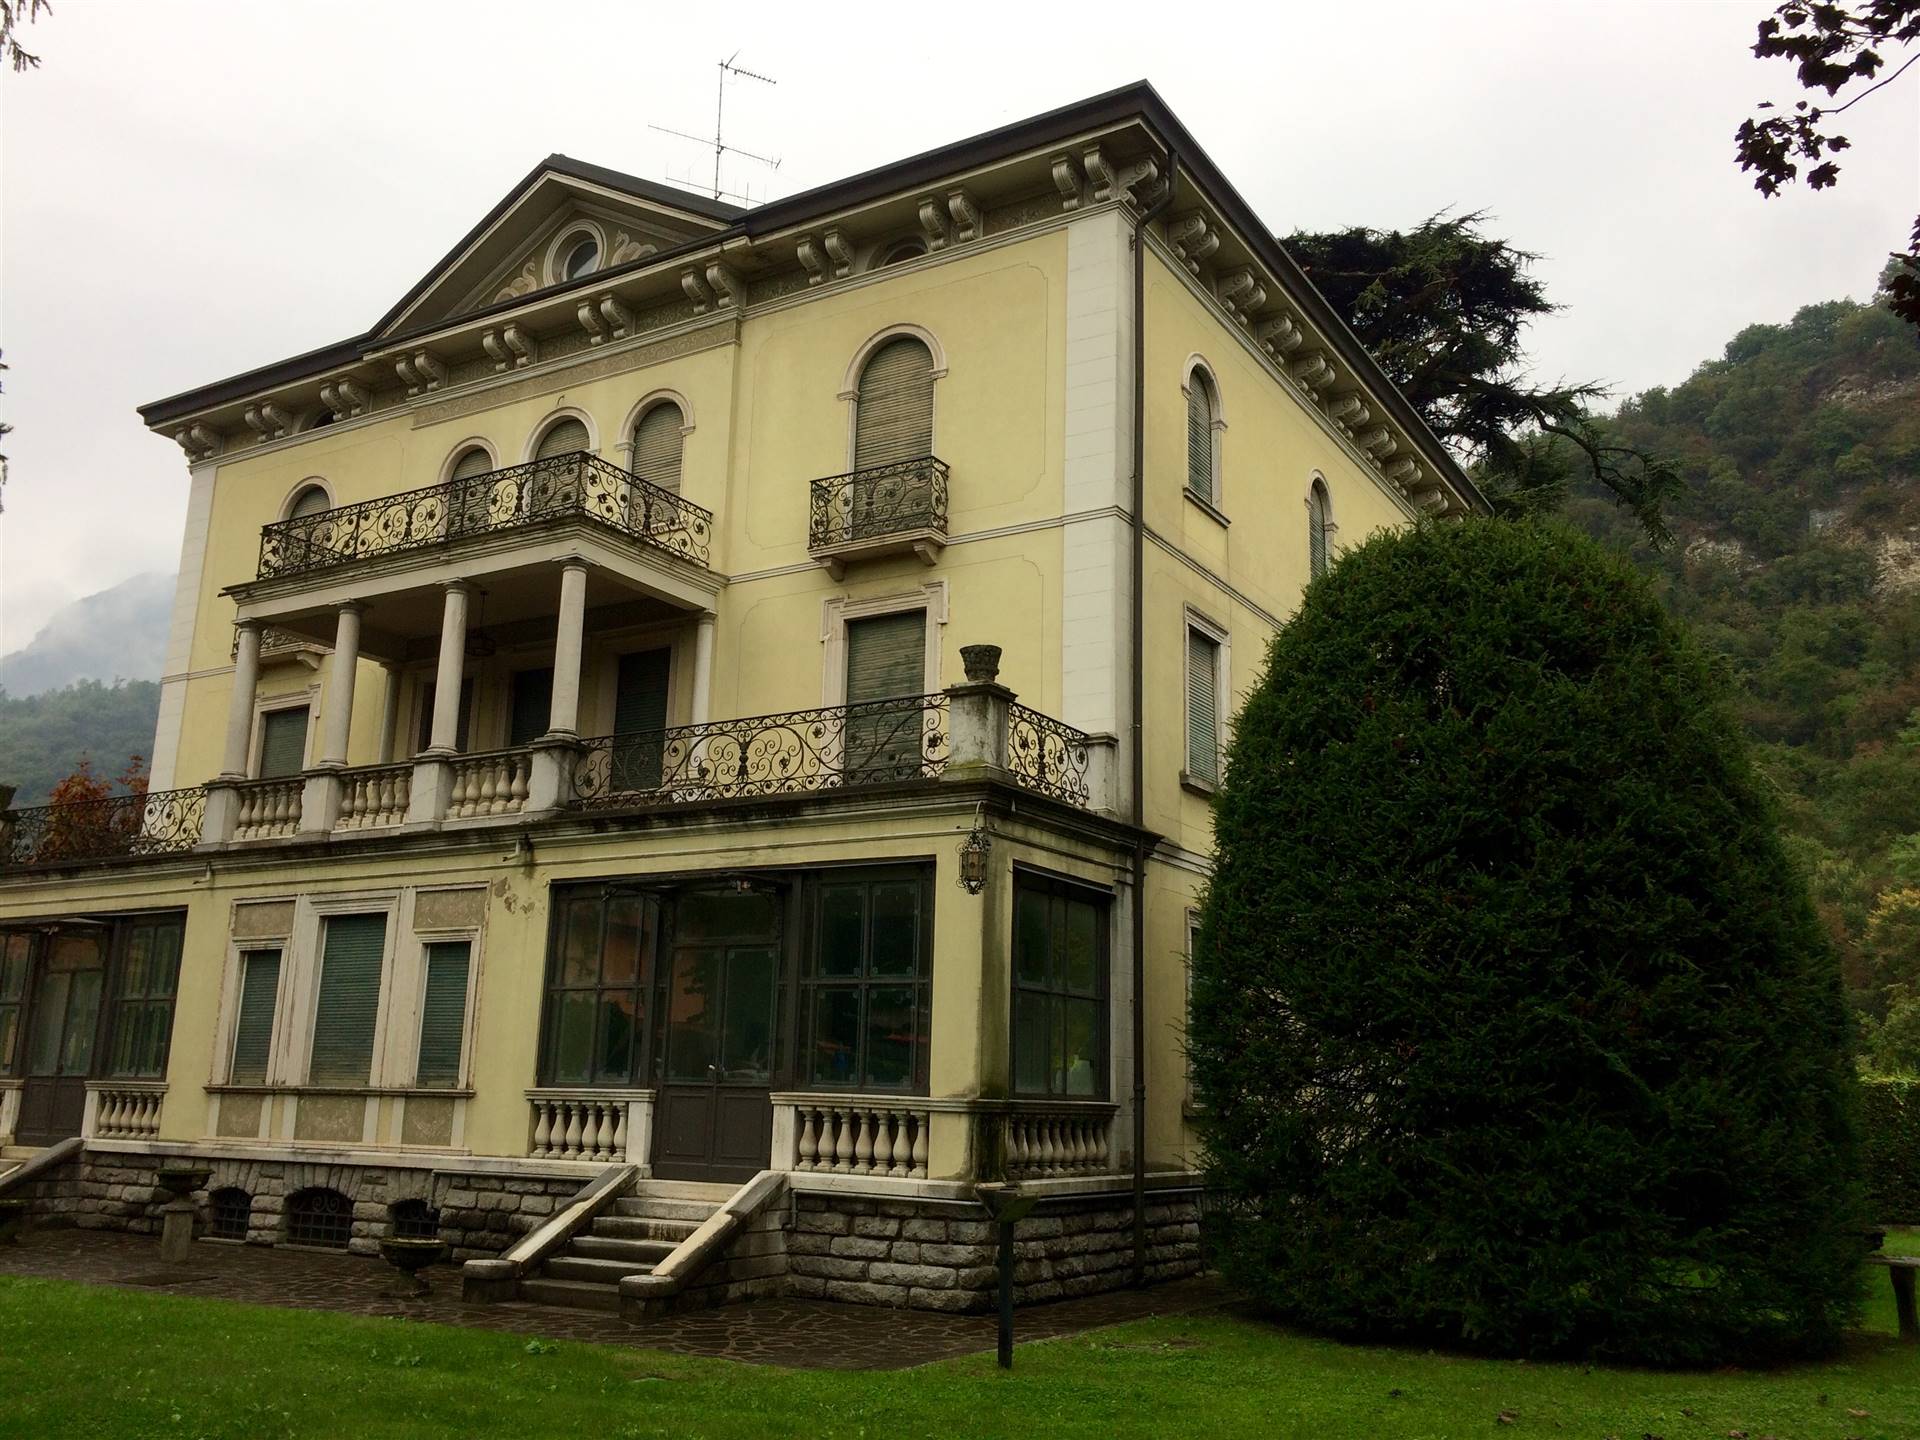 La villa è stata terminata nel 1901, realizzata dallo stesso architetto che ha edificato Villa Alba a Gardone Riviera (BS), restaurata completamente 